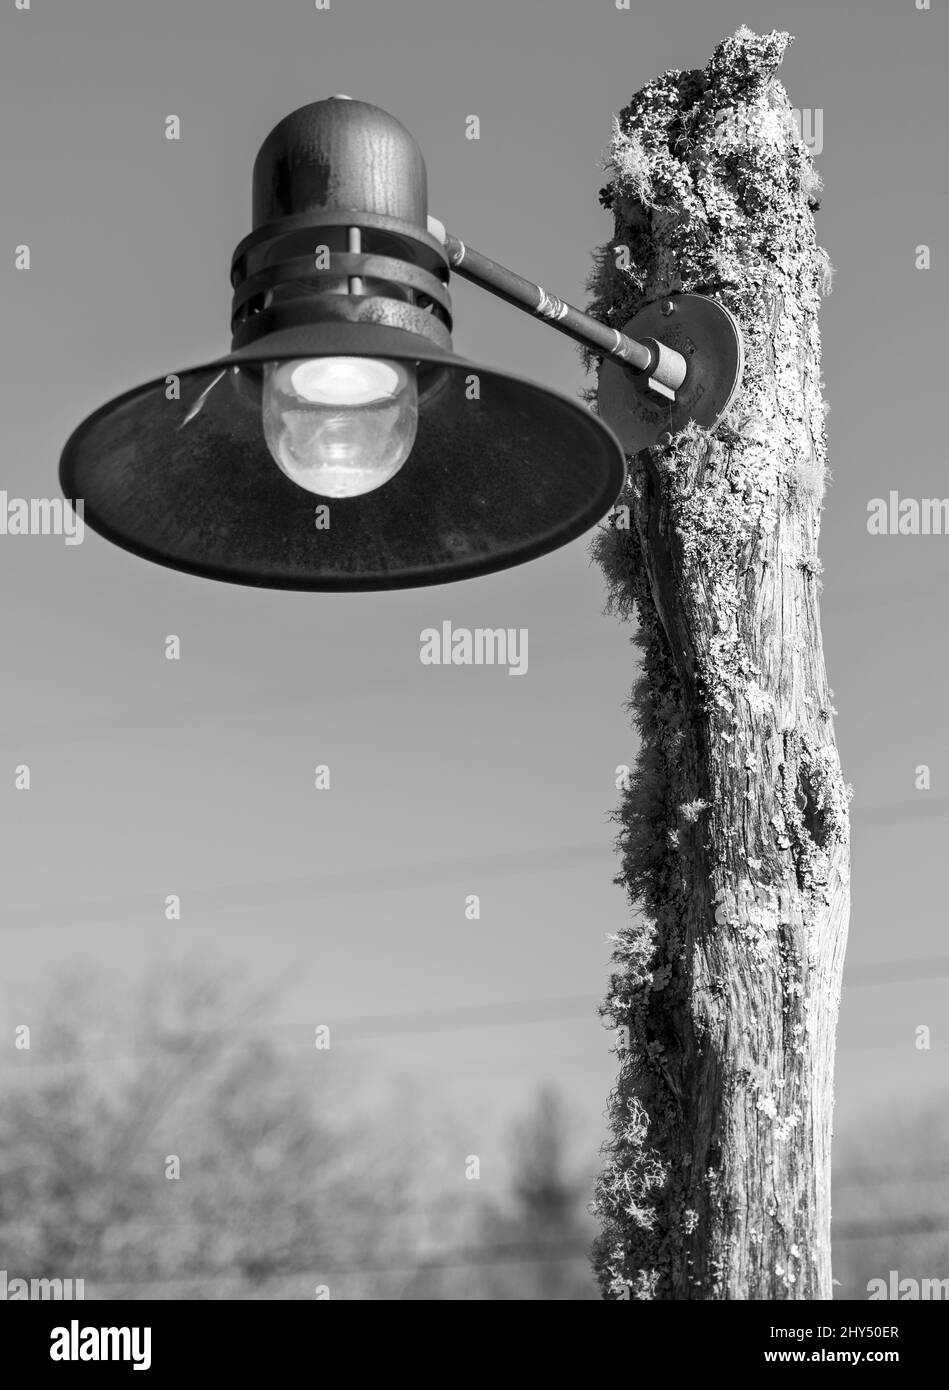 Scatto verticale in scala di grigi di una lampada su un palo di legno Foto Stock